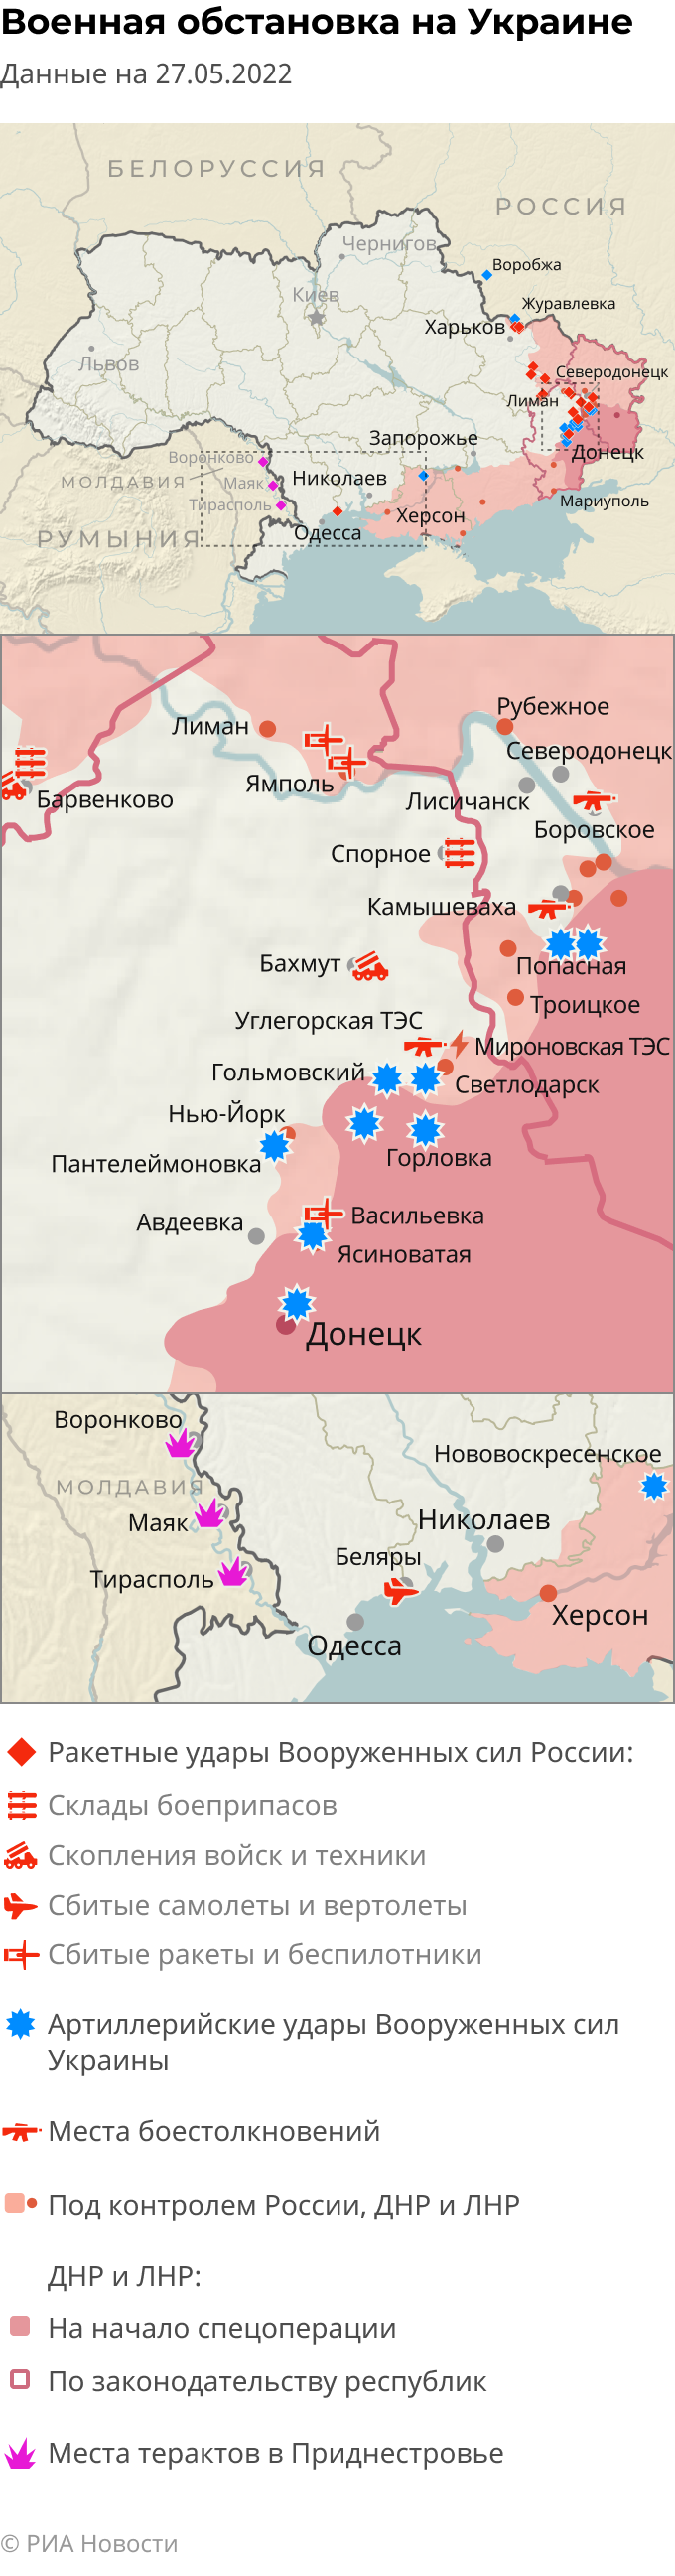 Бои на украине сегодня карта боевых действий